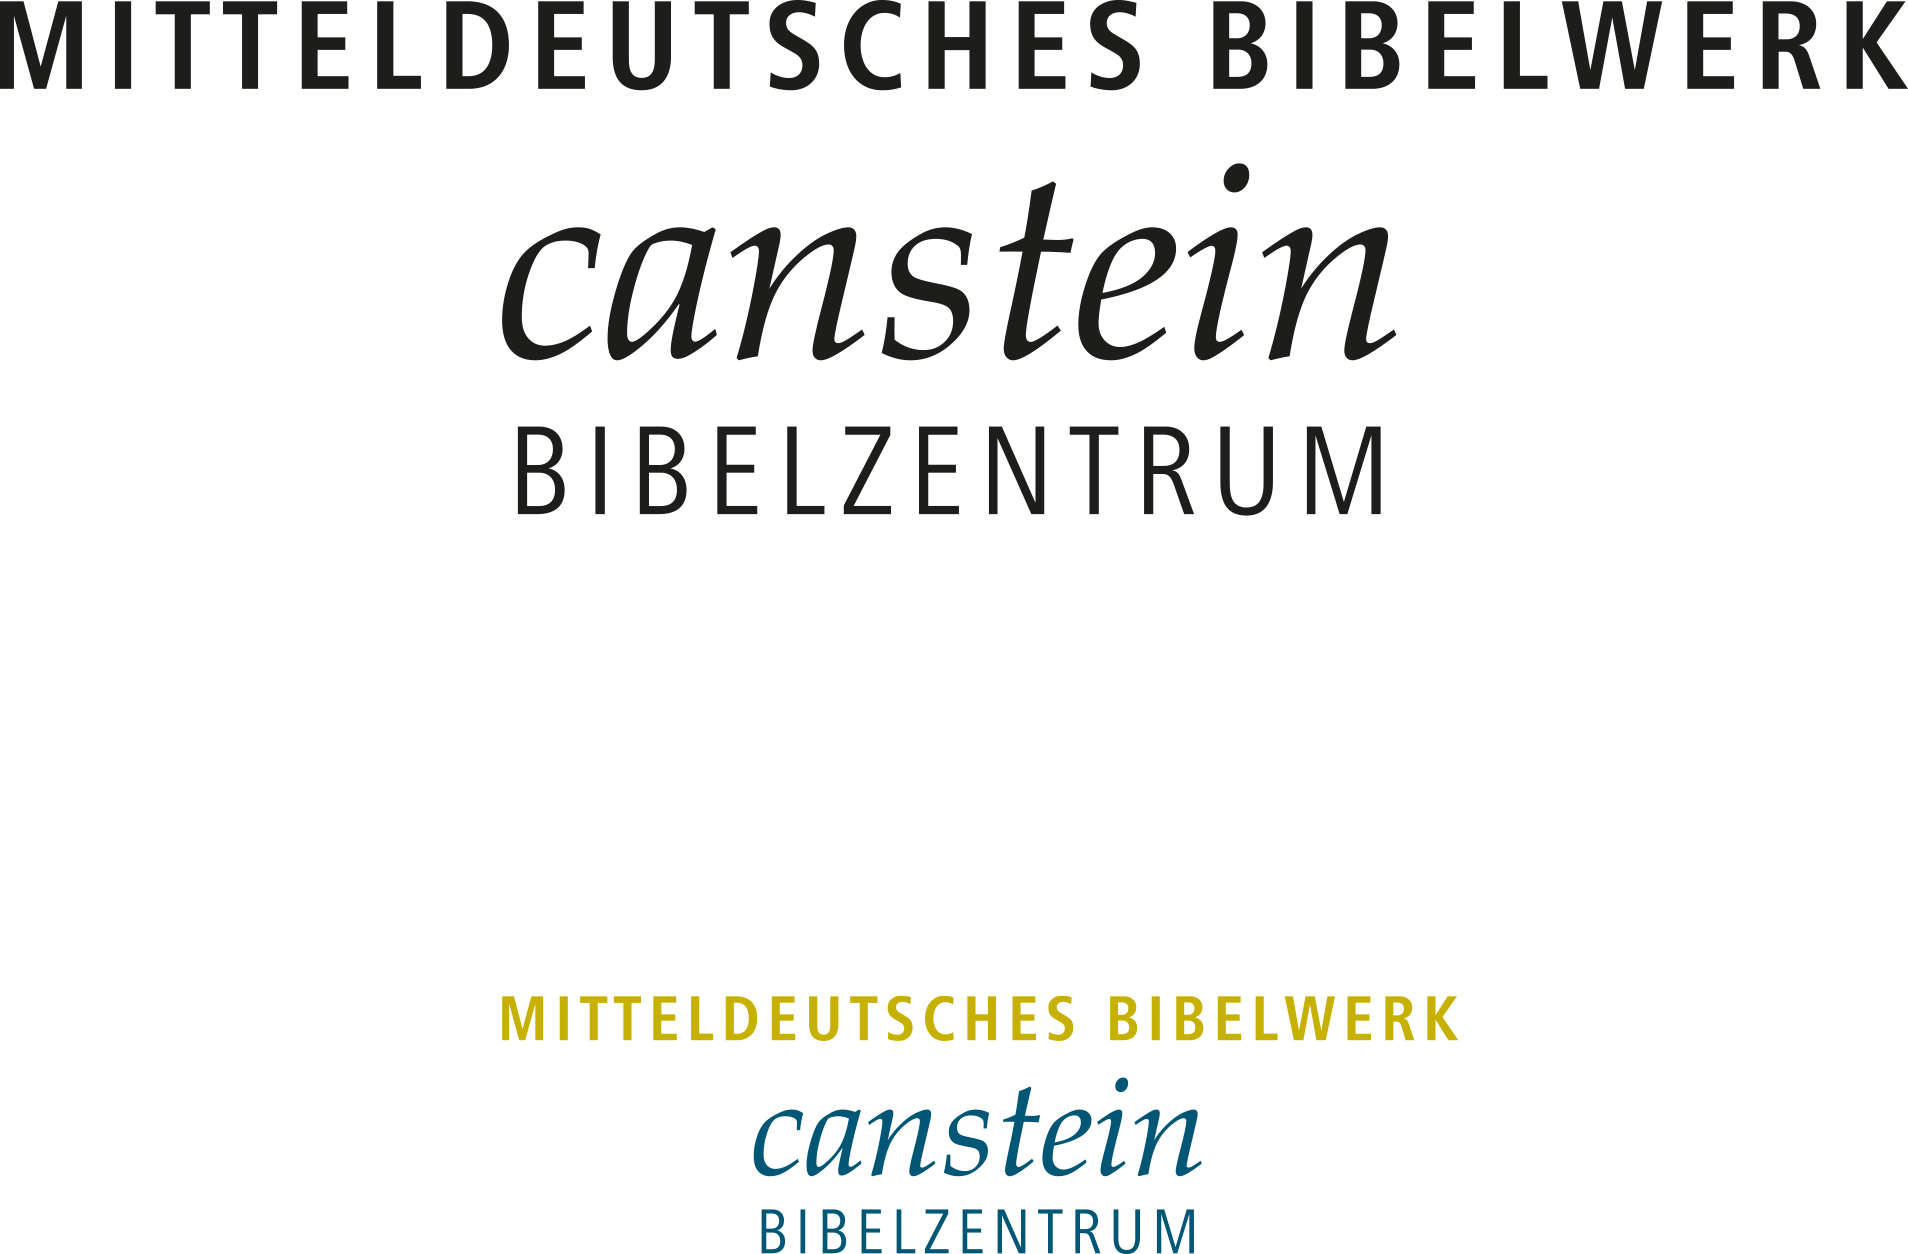 Mitteldeutsches Bibelwerk